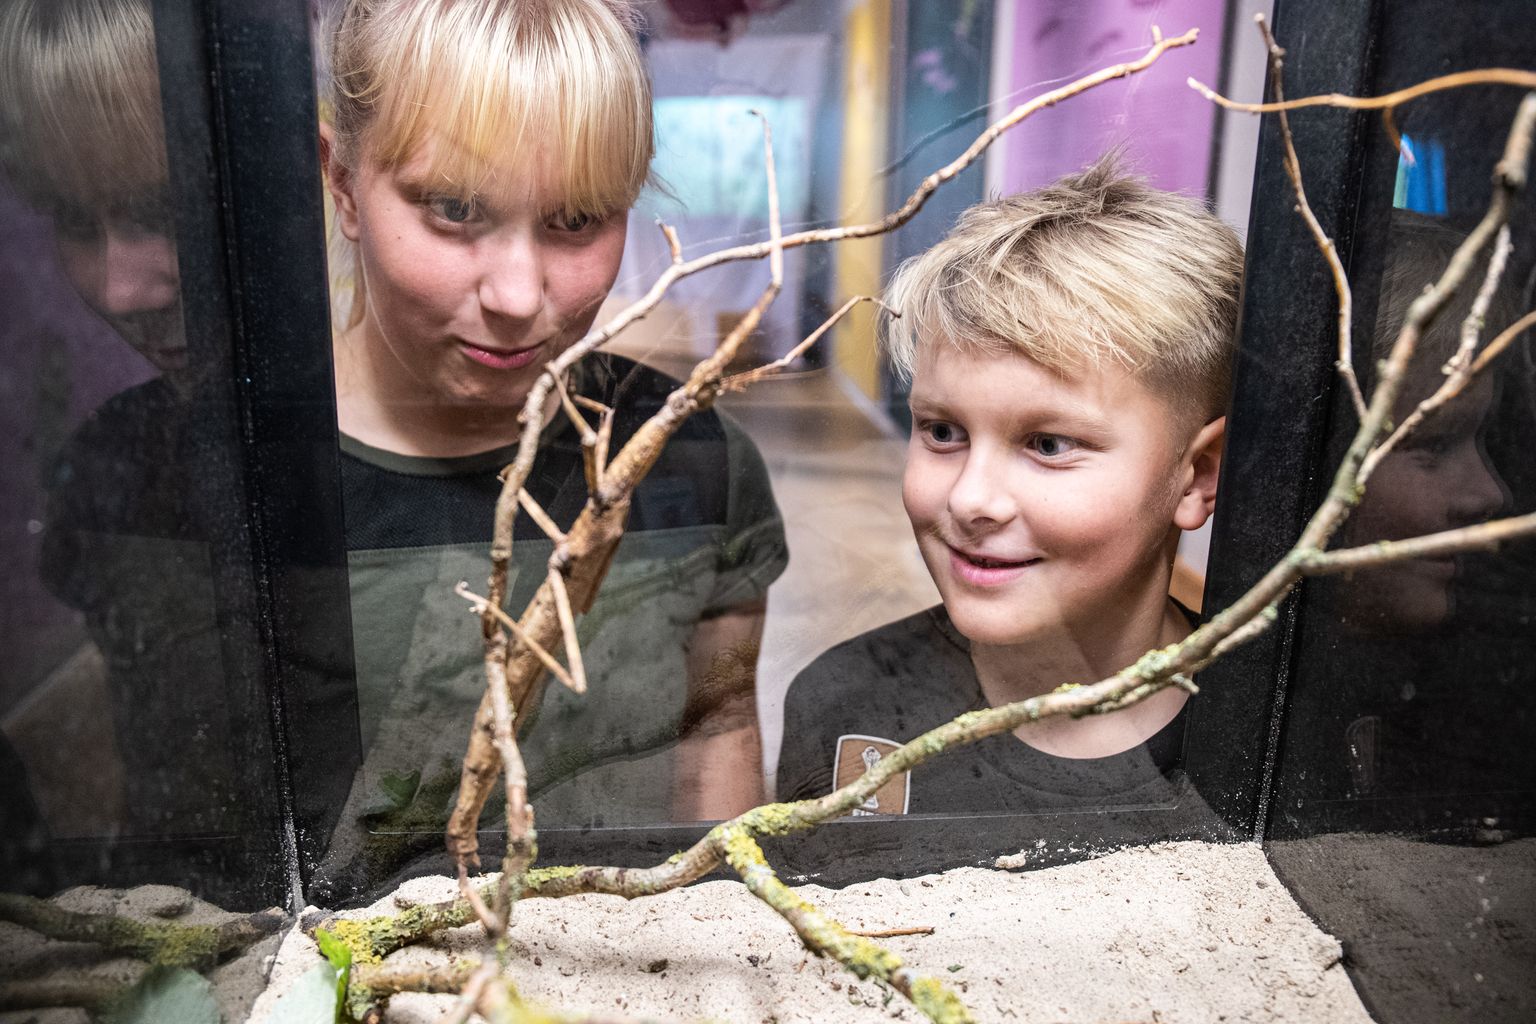 Tallinna loomaaias toimunud putukanäitust käisid kaemas Postimees Juunior reporterid Kirsi ja Kaspar Koel.